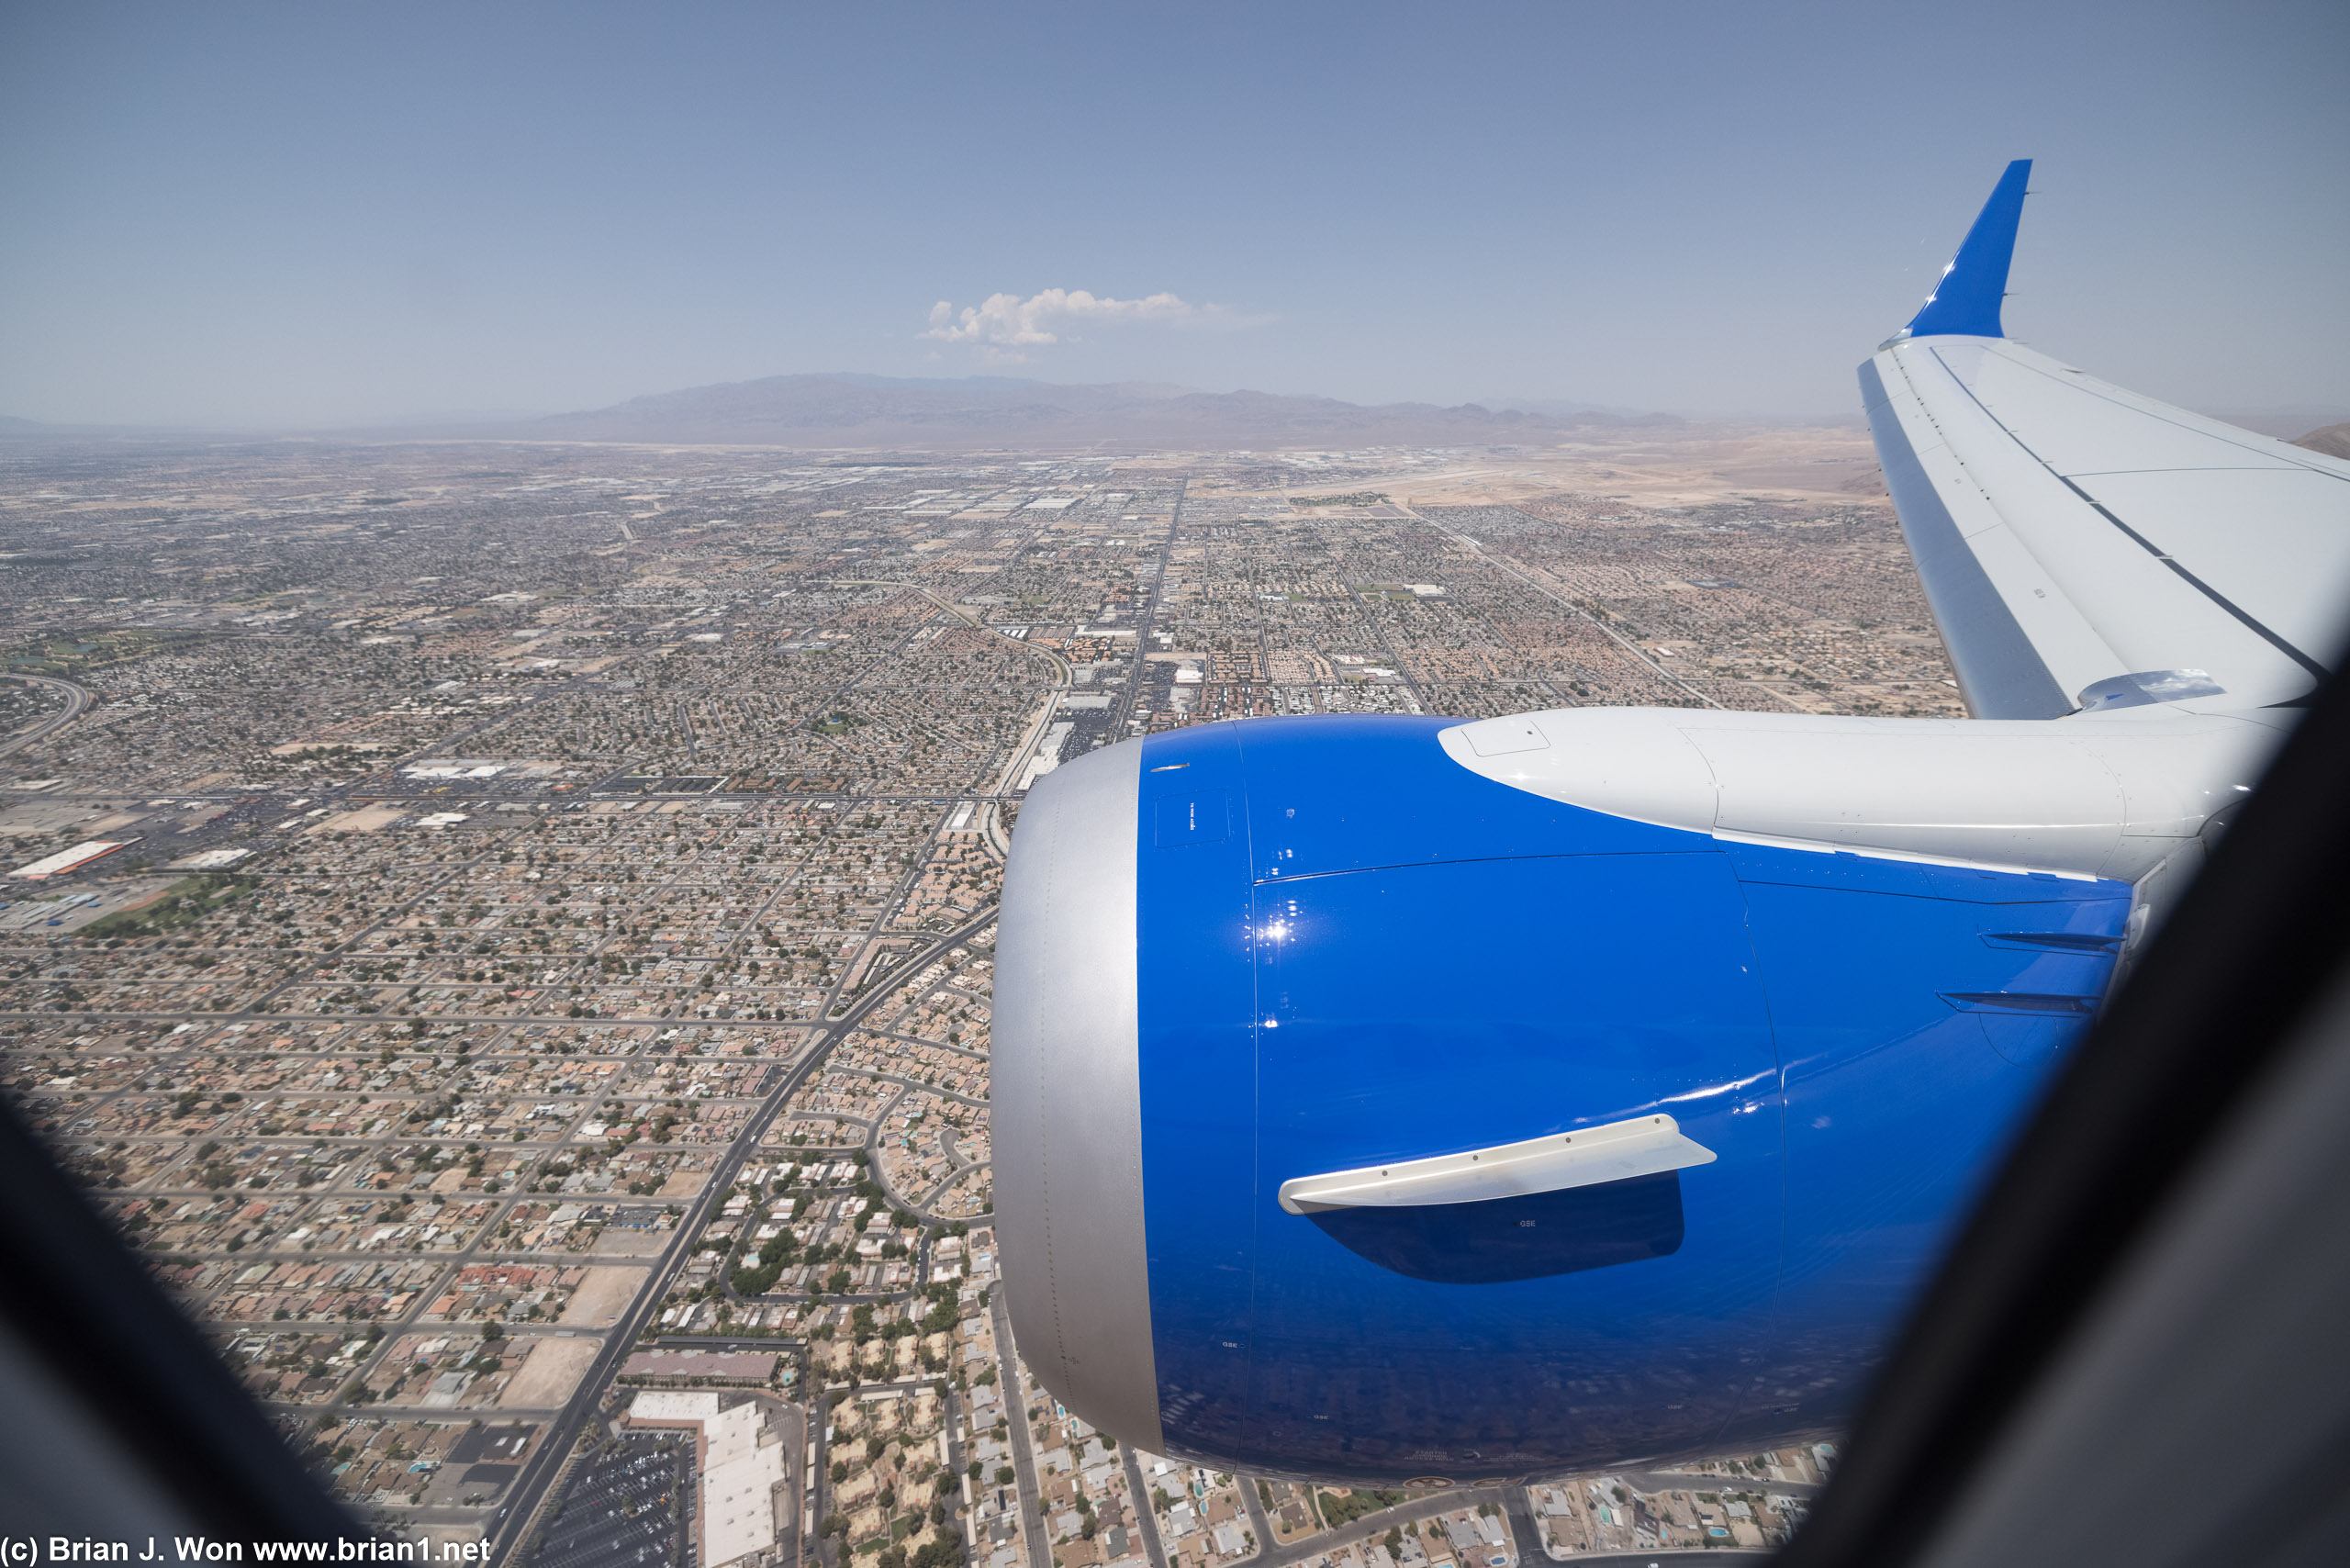 Final approach over Las Vegas.